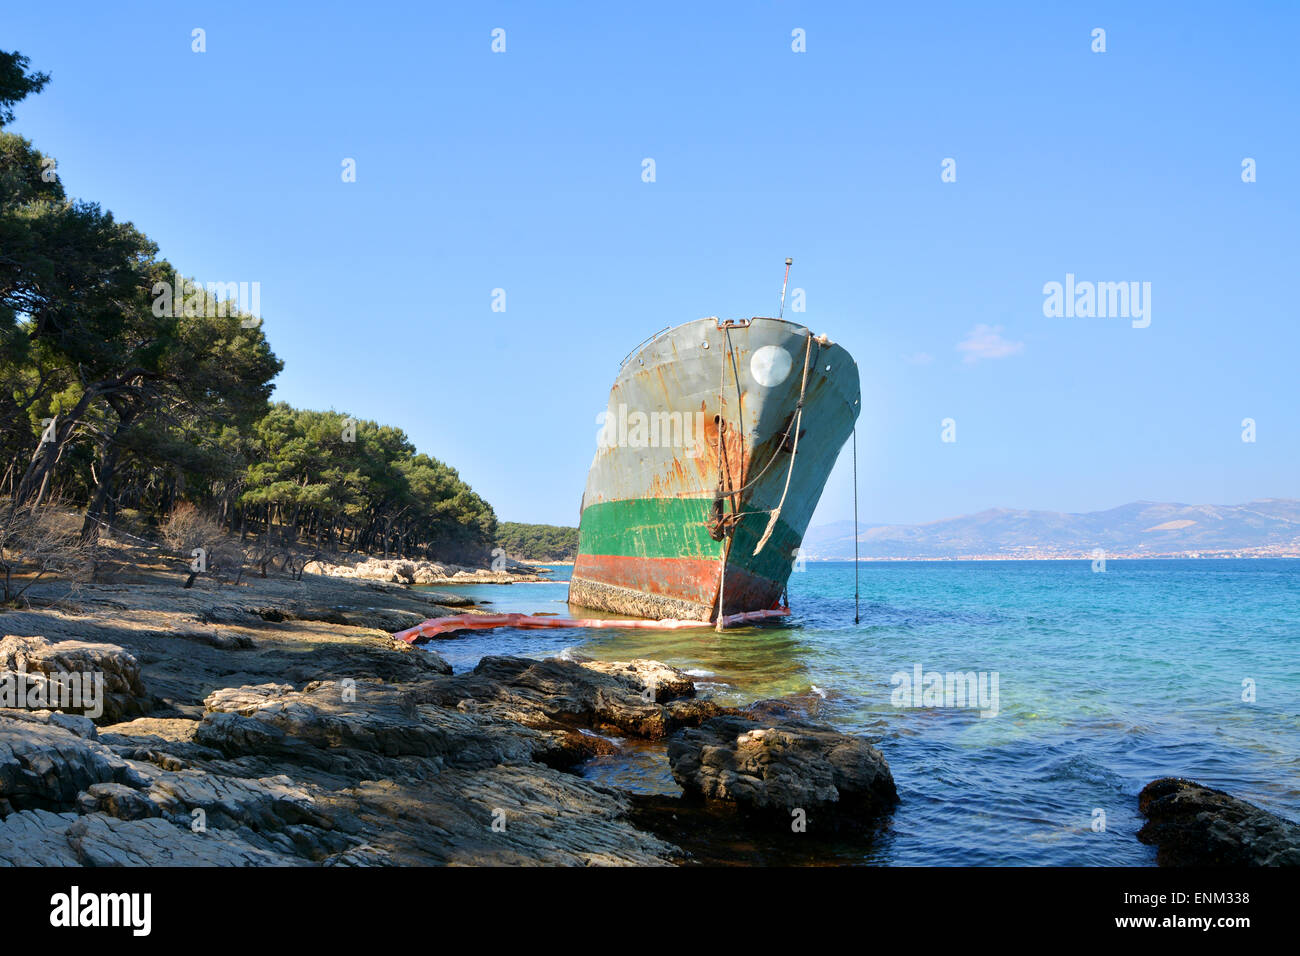 old cargo boat stranded on the rocks in croatia Stock Photo